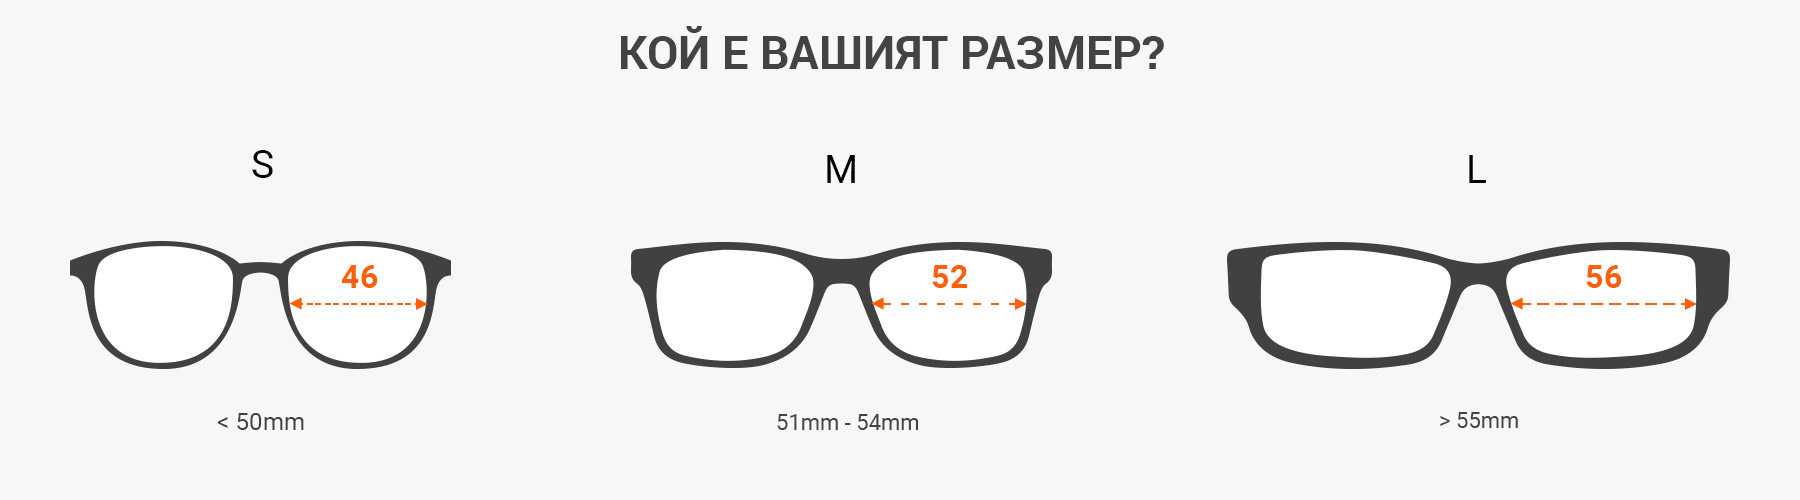 как да разчитате параметрите на слънчевите очила - Измерете размерите на слънчевите очила с рулетка или метър.